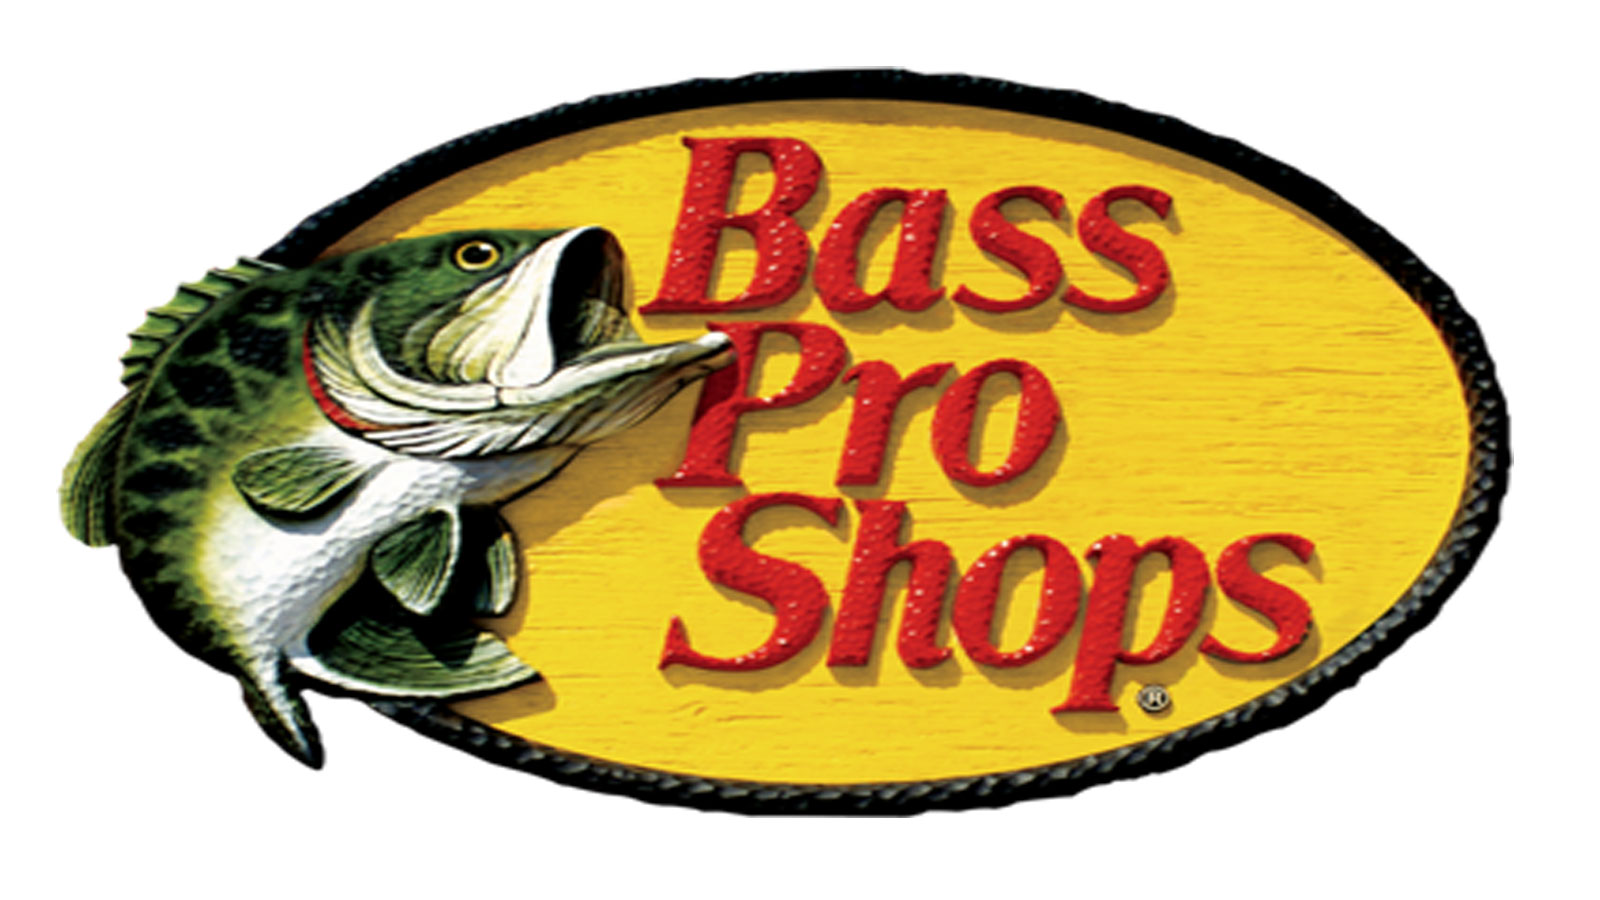 Bass pro shops. Bass Pro shops logo. Басс лого. Basspro магазин.